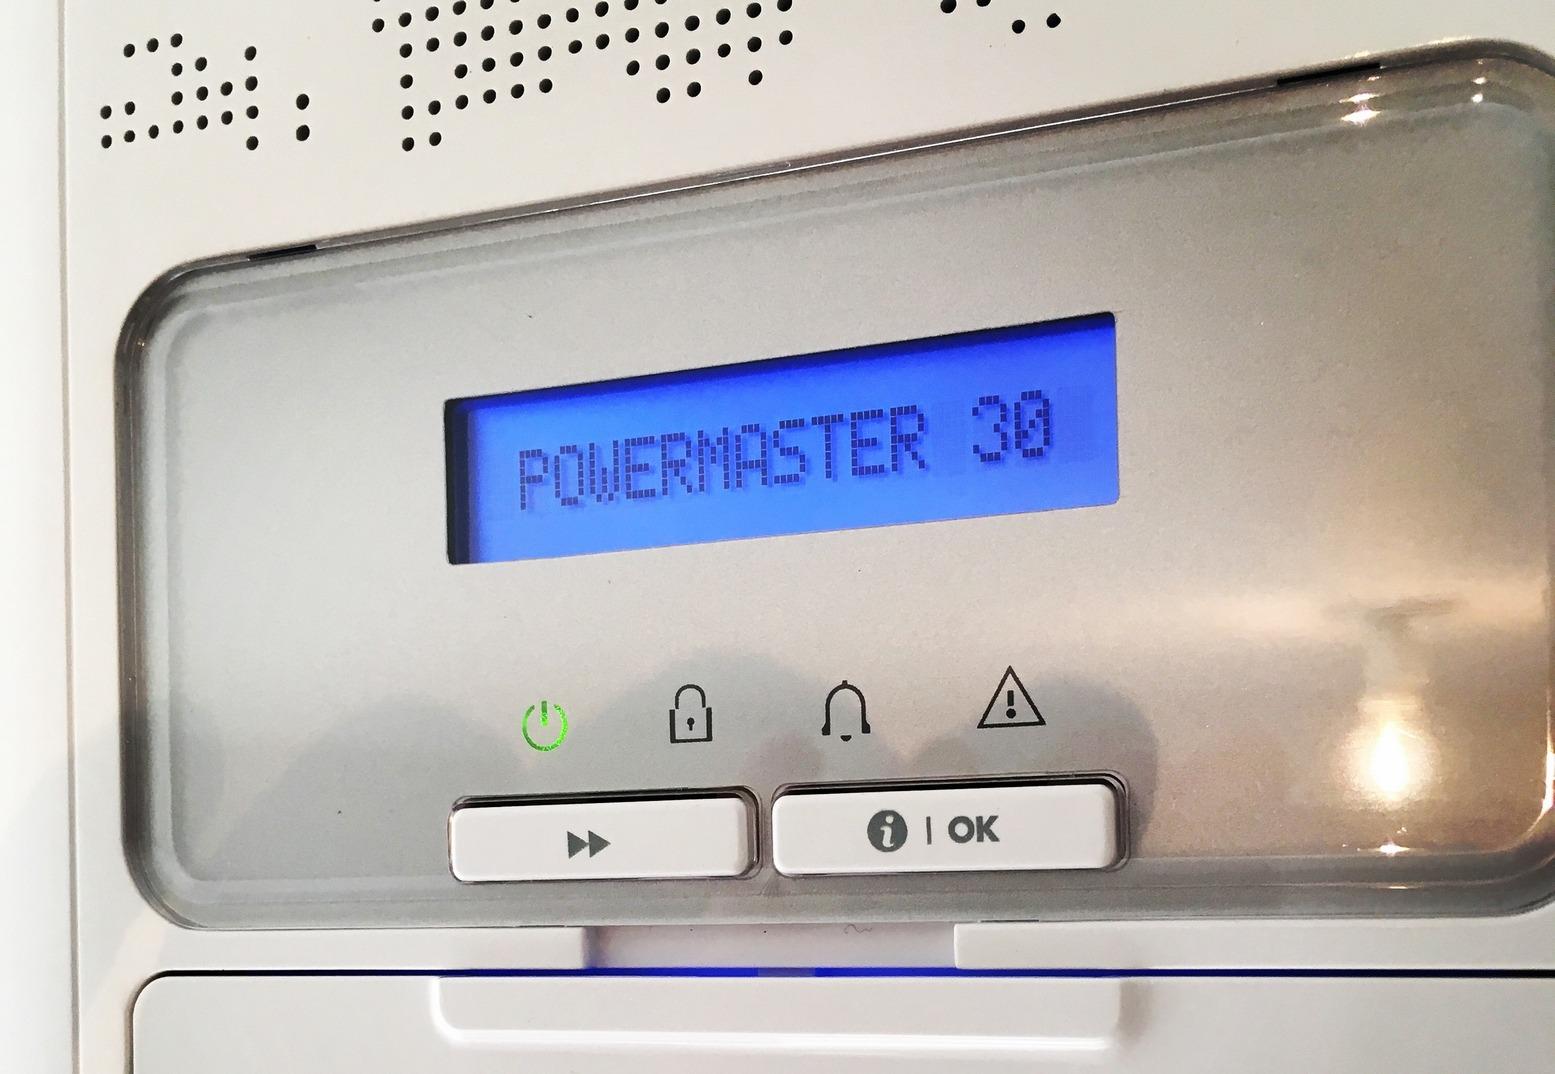 Powermaster 30 installee